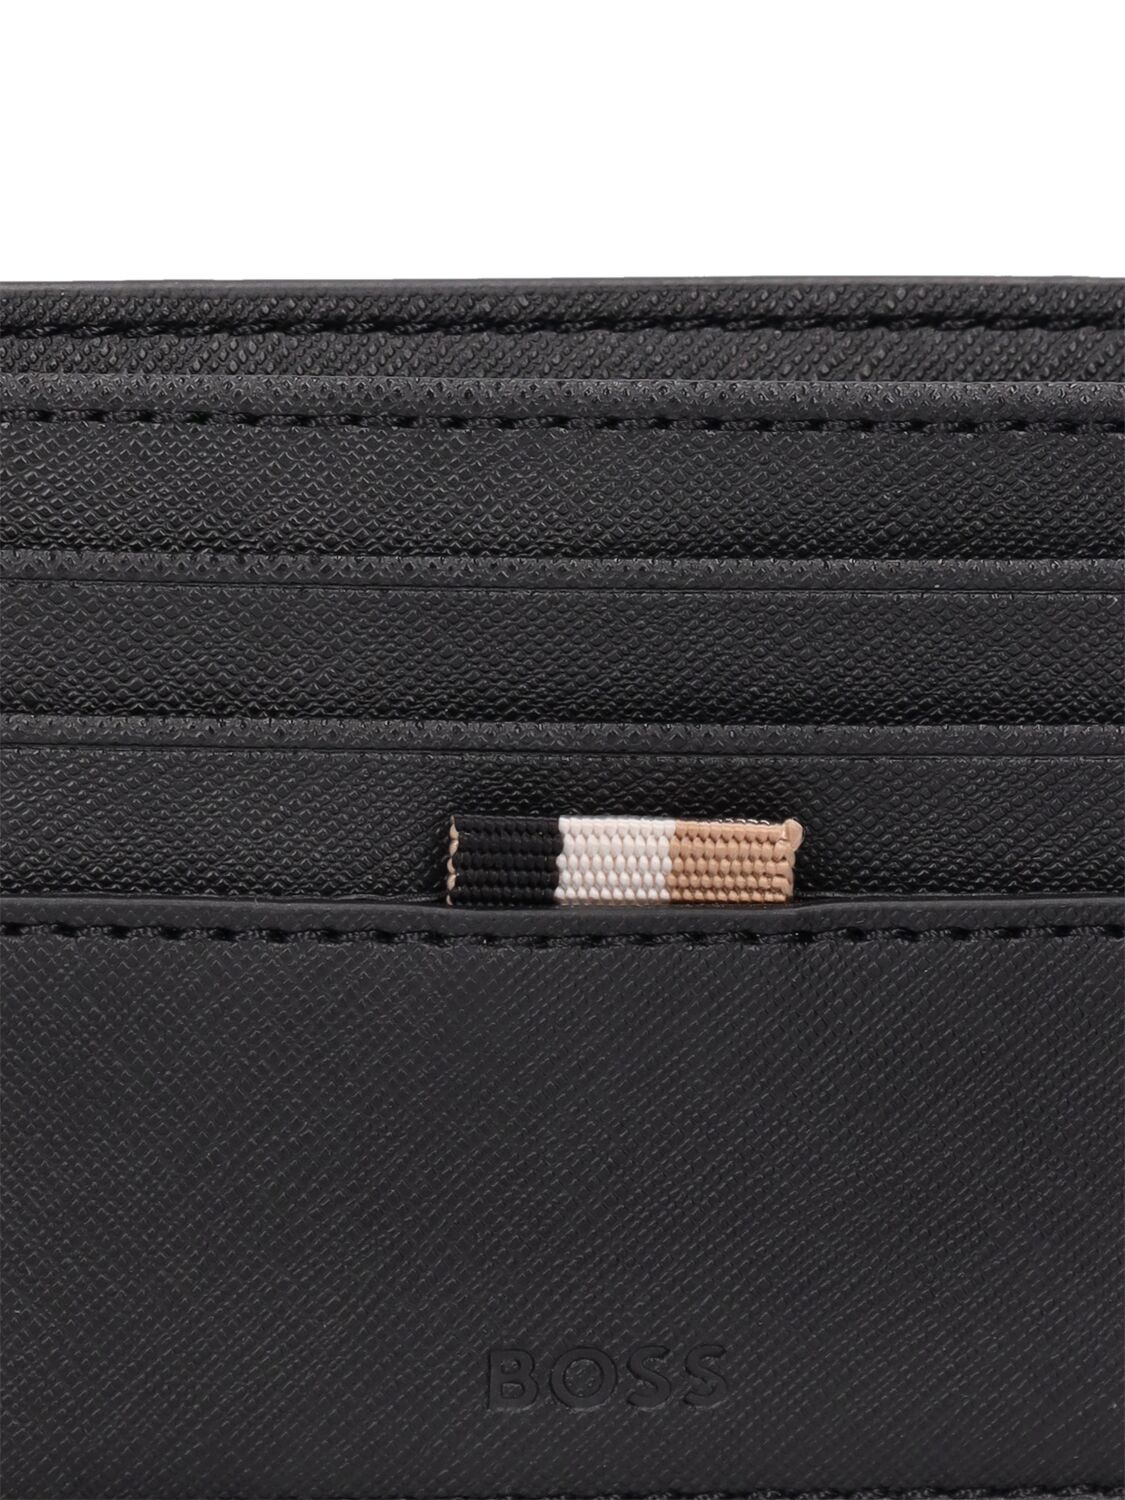 Shop Hugo Boss Zain Leather Billfold Wallet In Black